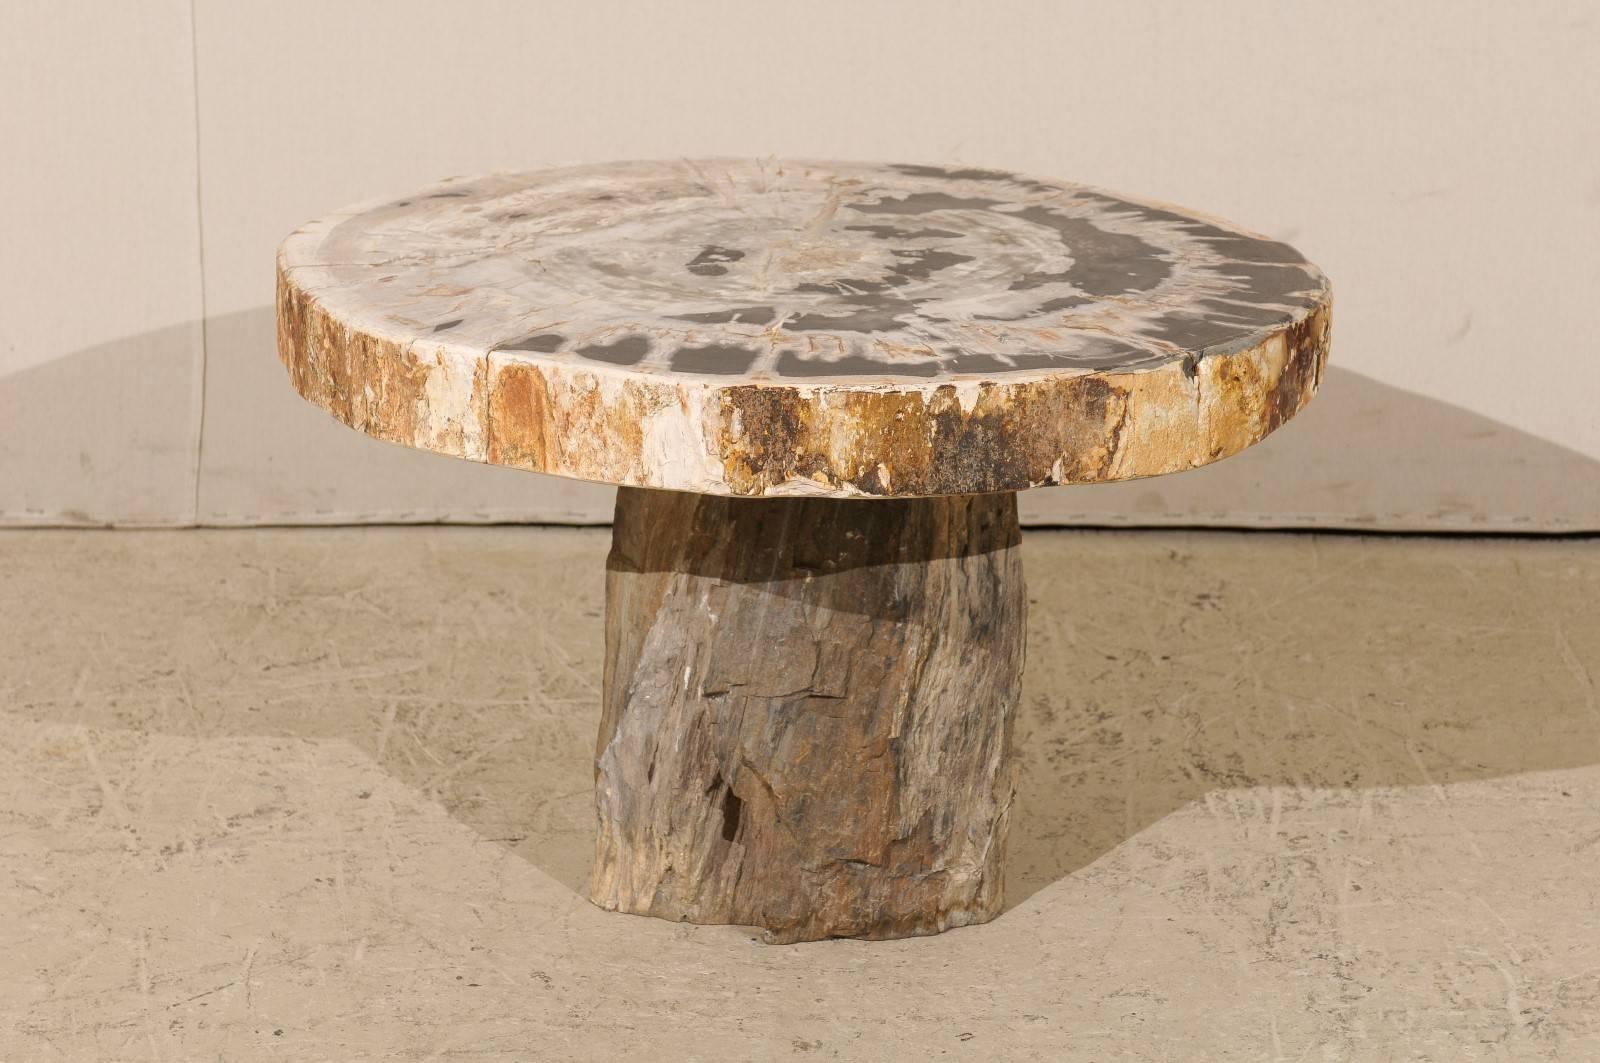 Une table basse en bois pétrifié. Cette table basse en bois pétrifié présente un plateau de forme ronde sur une base de style piédestal. Le haut bicolore mélange les tons beige et noir. Le plateau se pose simplement sur la base. La table est très